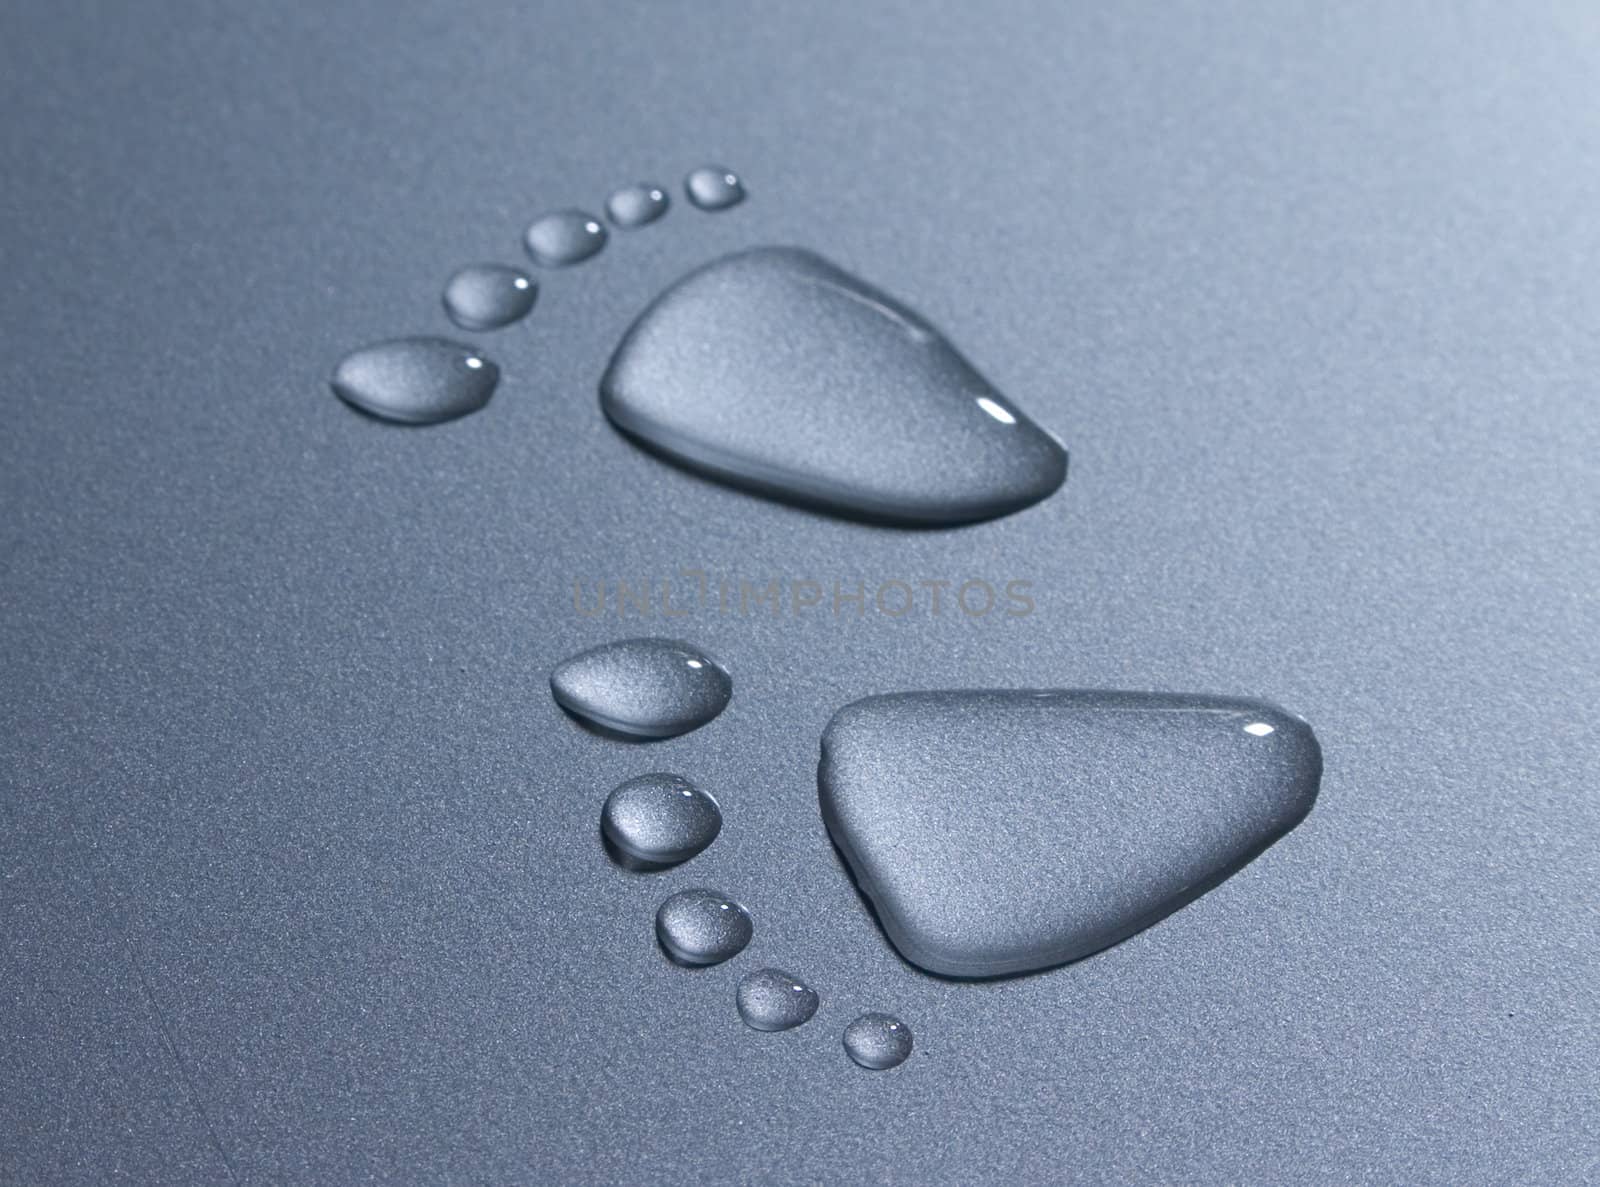 Drops of water that look like footprints